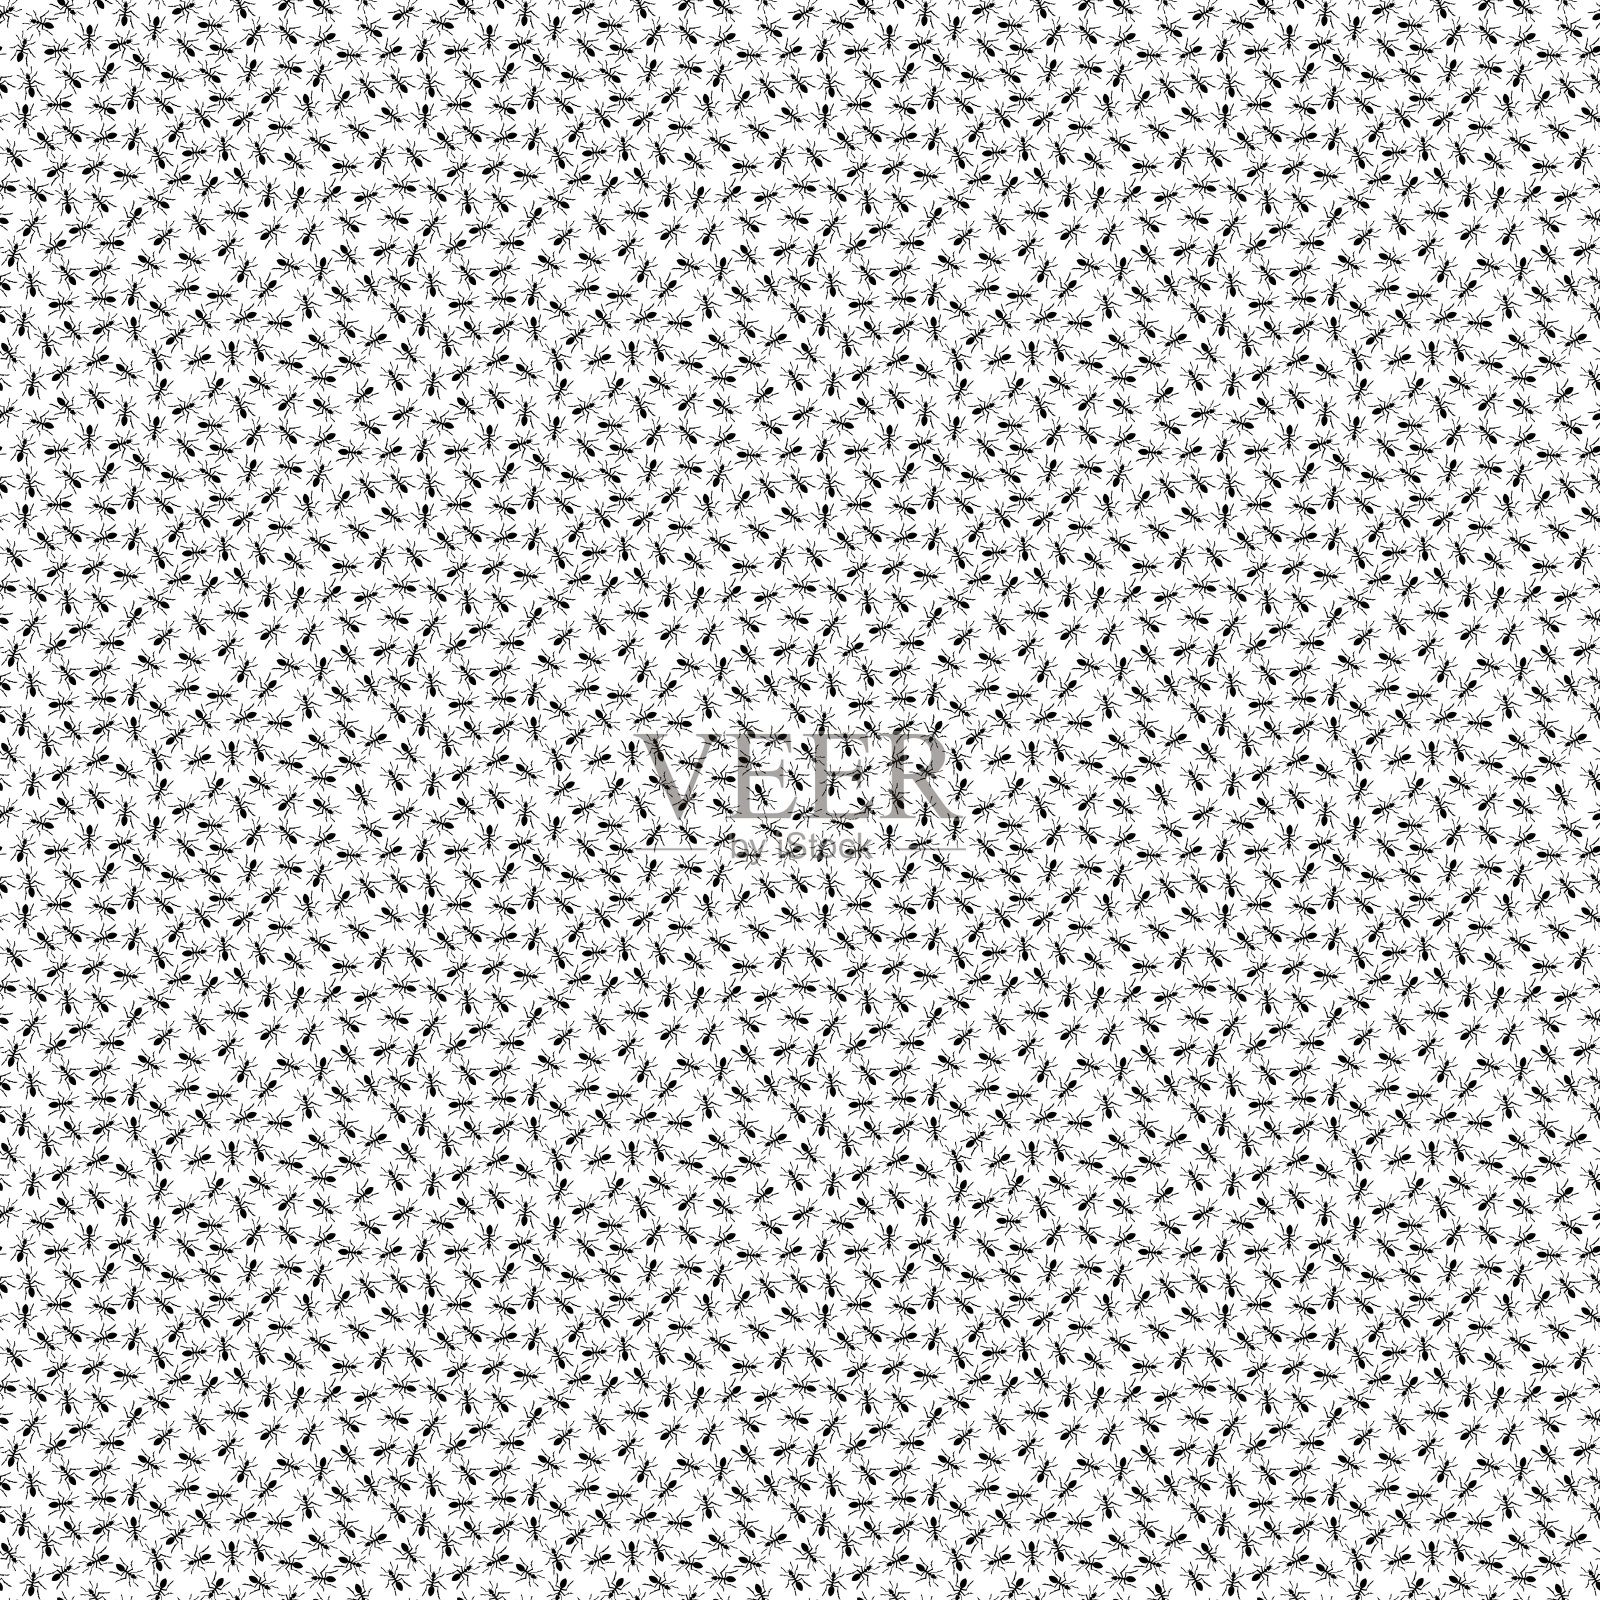 抽象无缝图案从手绘小黑蚂蚁轮廓波普艺术风格在白色的背景。墙纸、包装纸、相册封面、纺织品印花、印花棉布、纸张填充插画图片素材